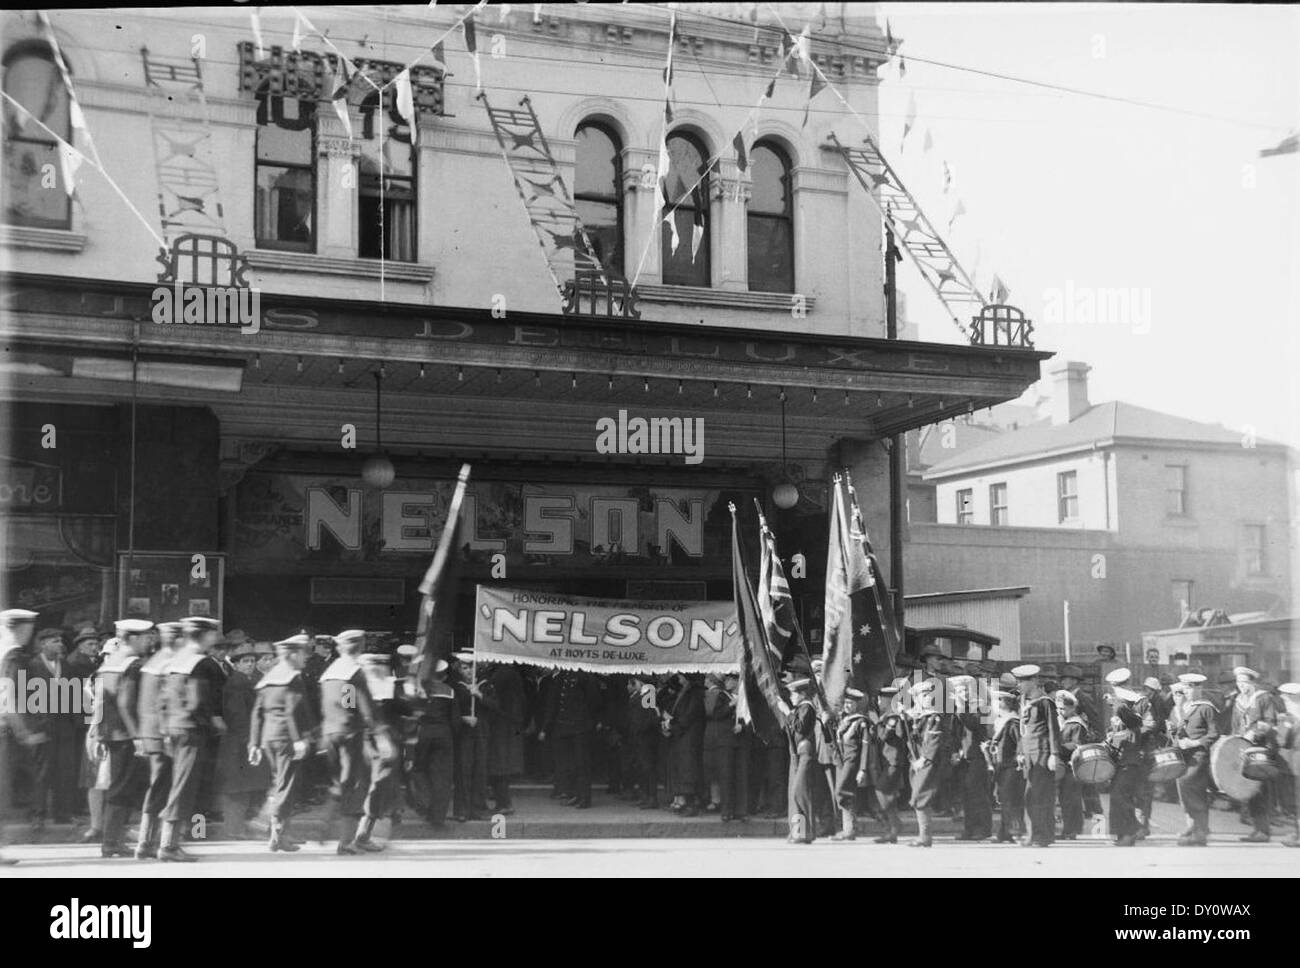 Lega Navale di cadetti in uniforme da marzo a hoyts de luxe cinema, George Street, Sydney per il film "Nelson", 6 agosto 1928 / fotografo Sam il cofano Foto Stock